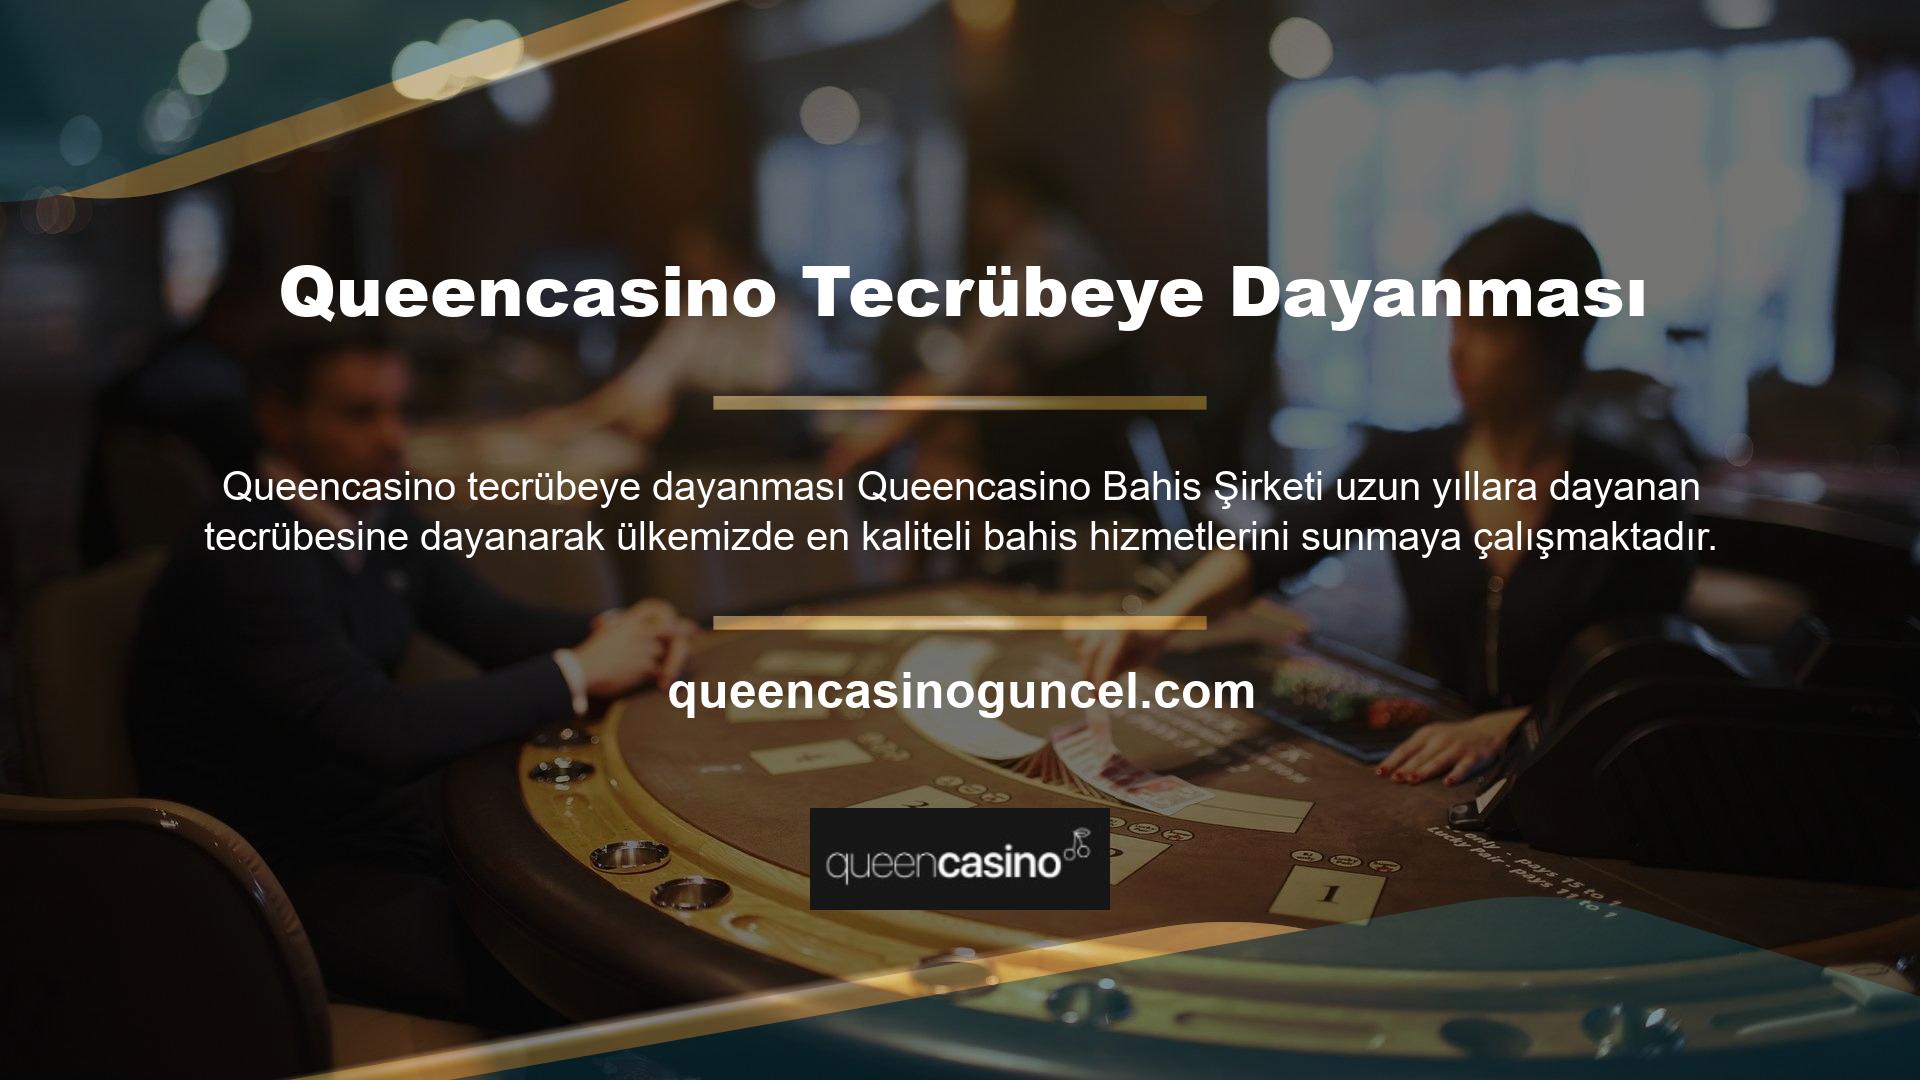 Ayrıca casino bonusları ve spor bahisleri dahil olmak üzere Queencasino TV izleyicilerine özel olarak sunulan birçok etkinliğe de göz atmak isteyebilirsiniz